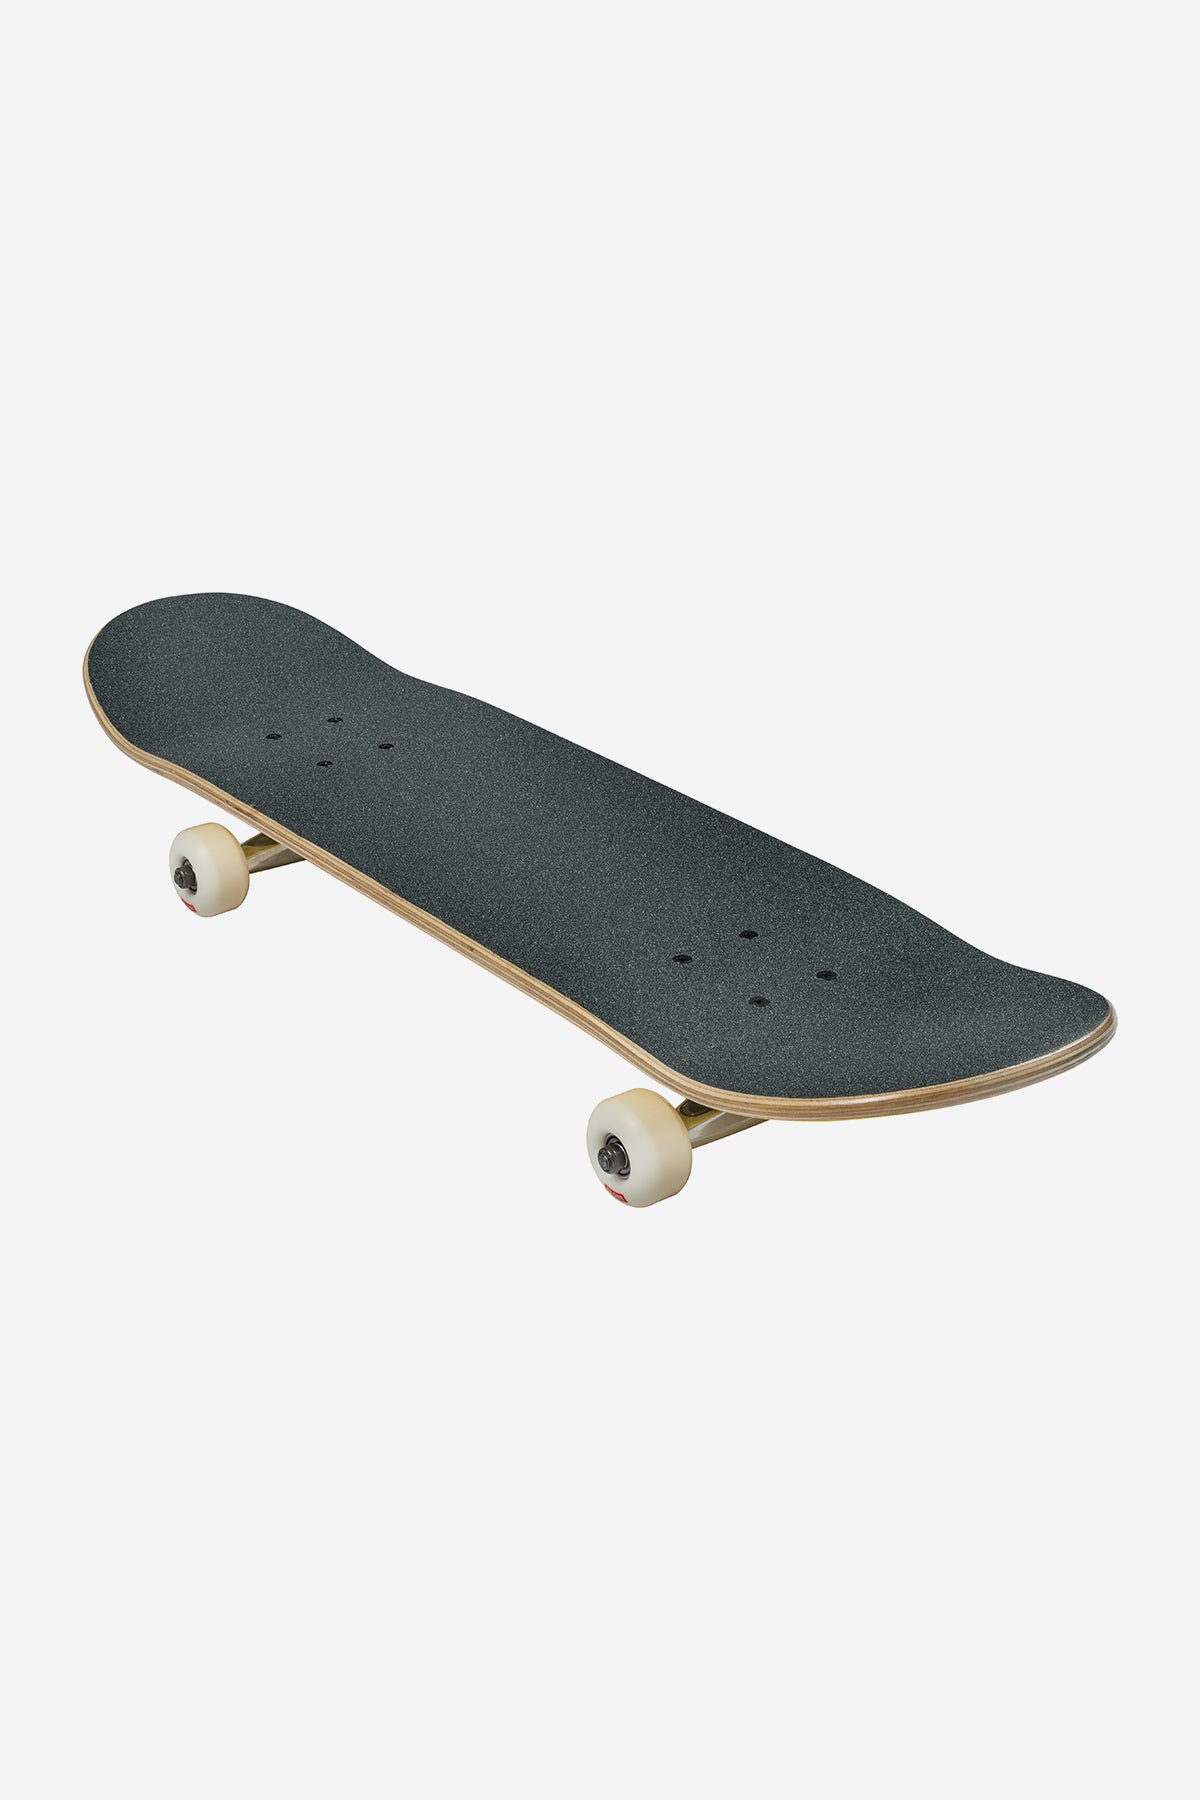 Globe - Goodstock - Red - 7.75" Completo Skateboard